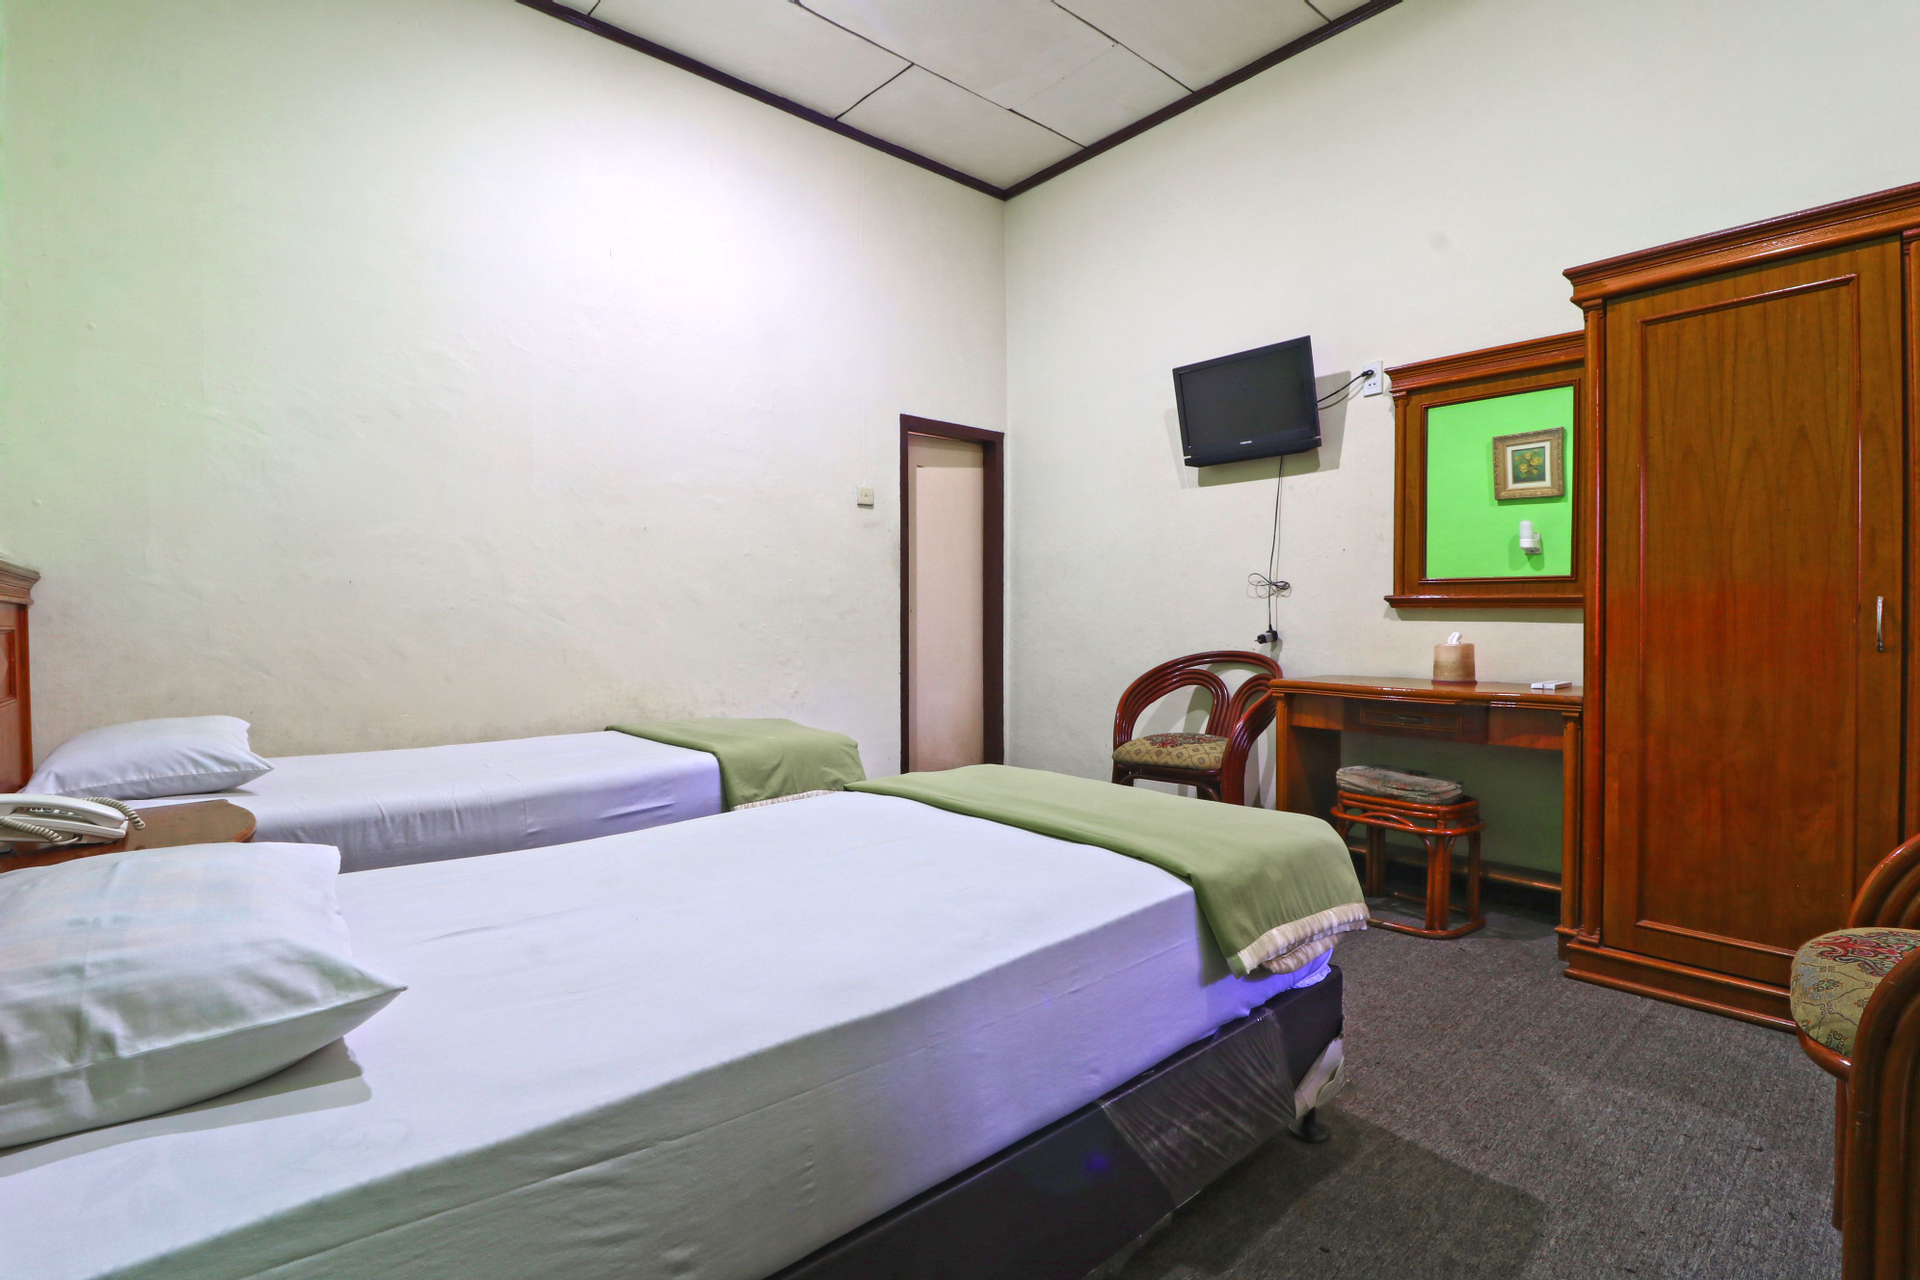 Bedroom 4, Hotel Sumatera, Medan